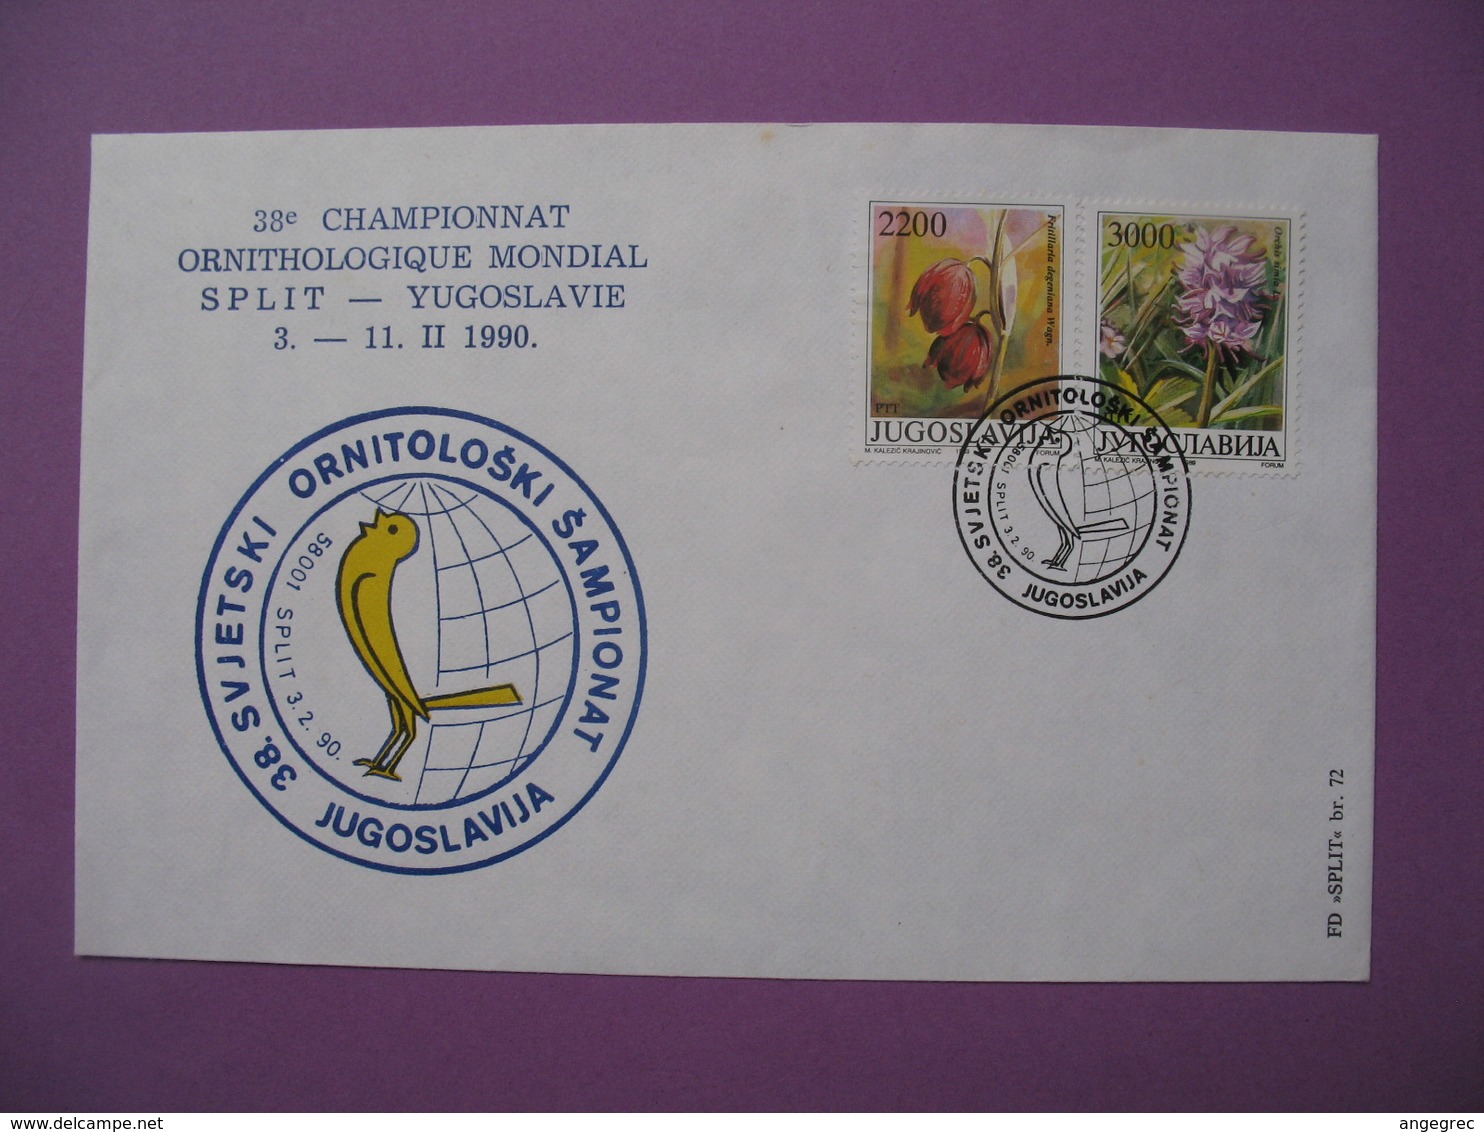 Lettre Yougoslavie   1990   38 ème Championnat Ornithologique  Split - Yougoslavie - Lettres & Documents